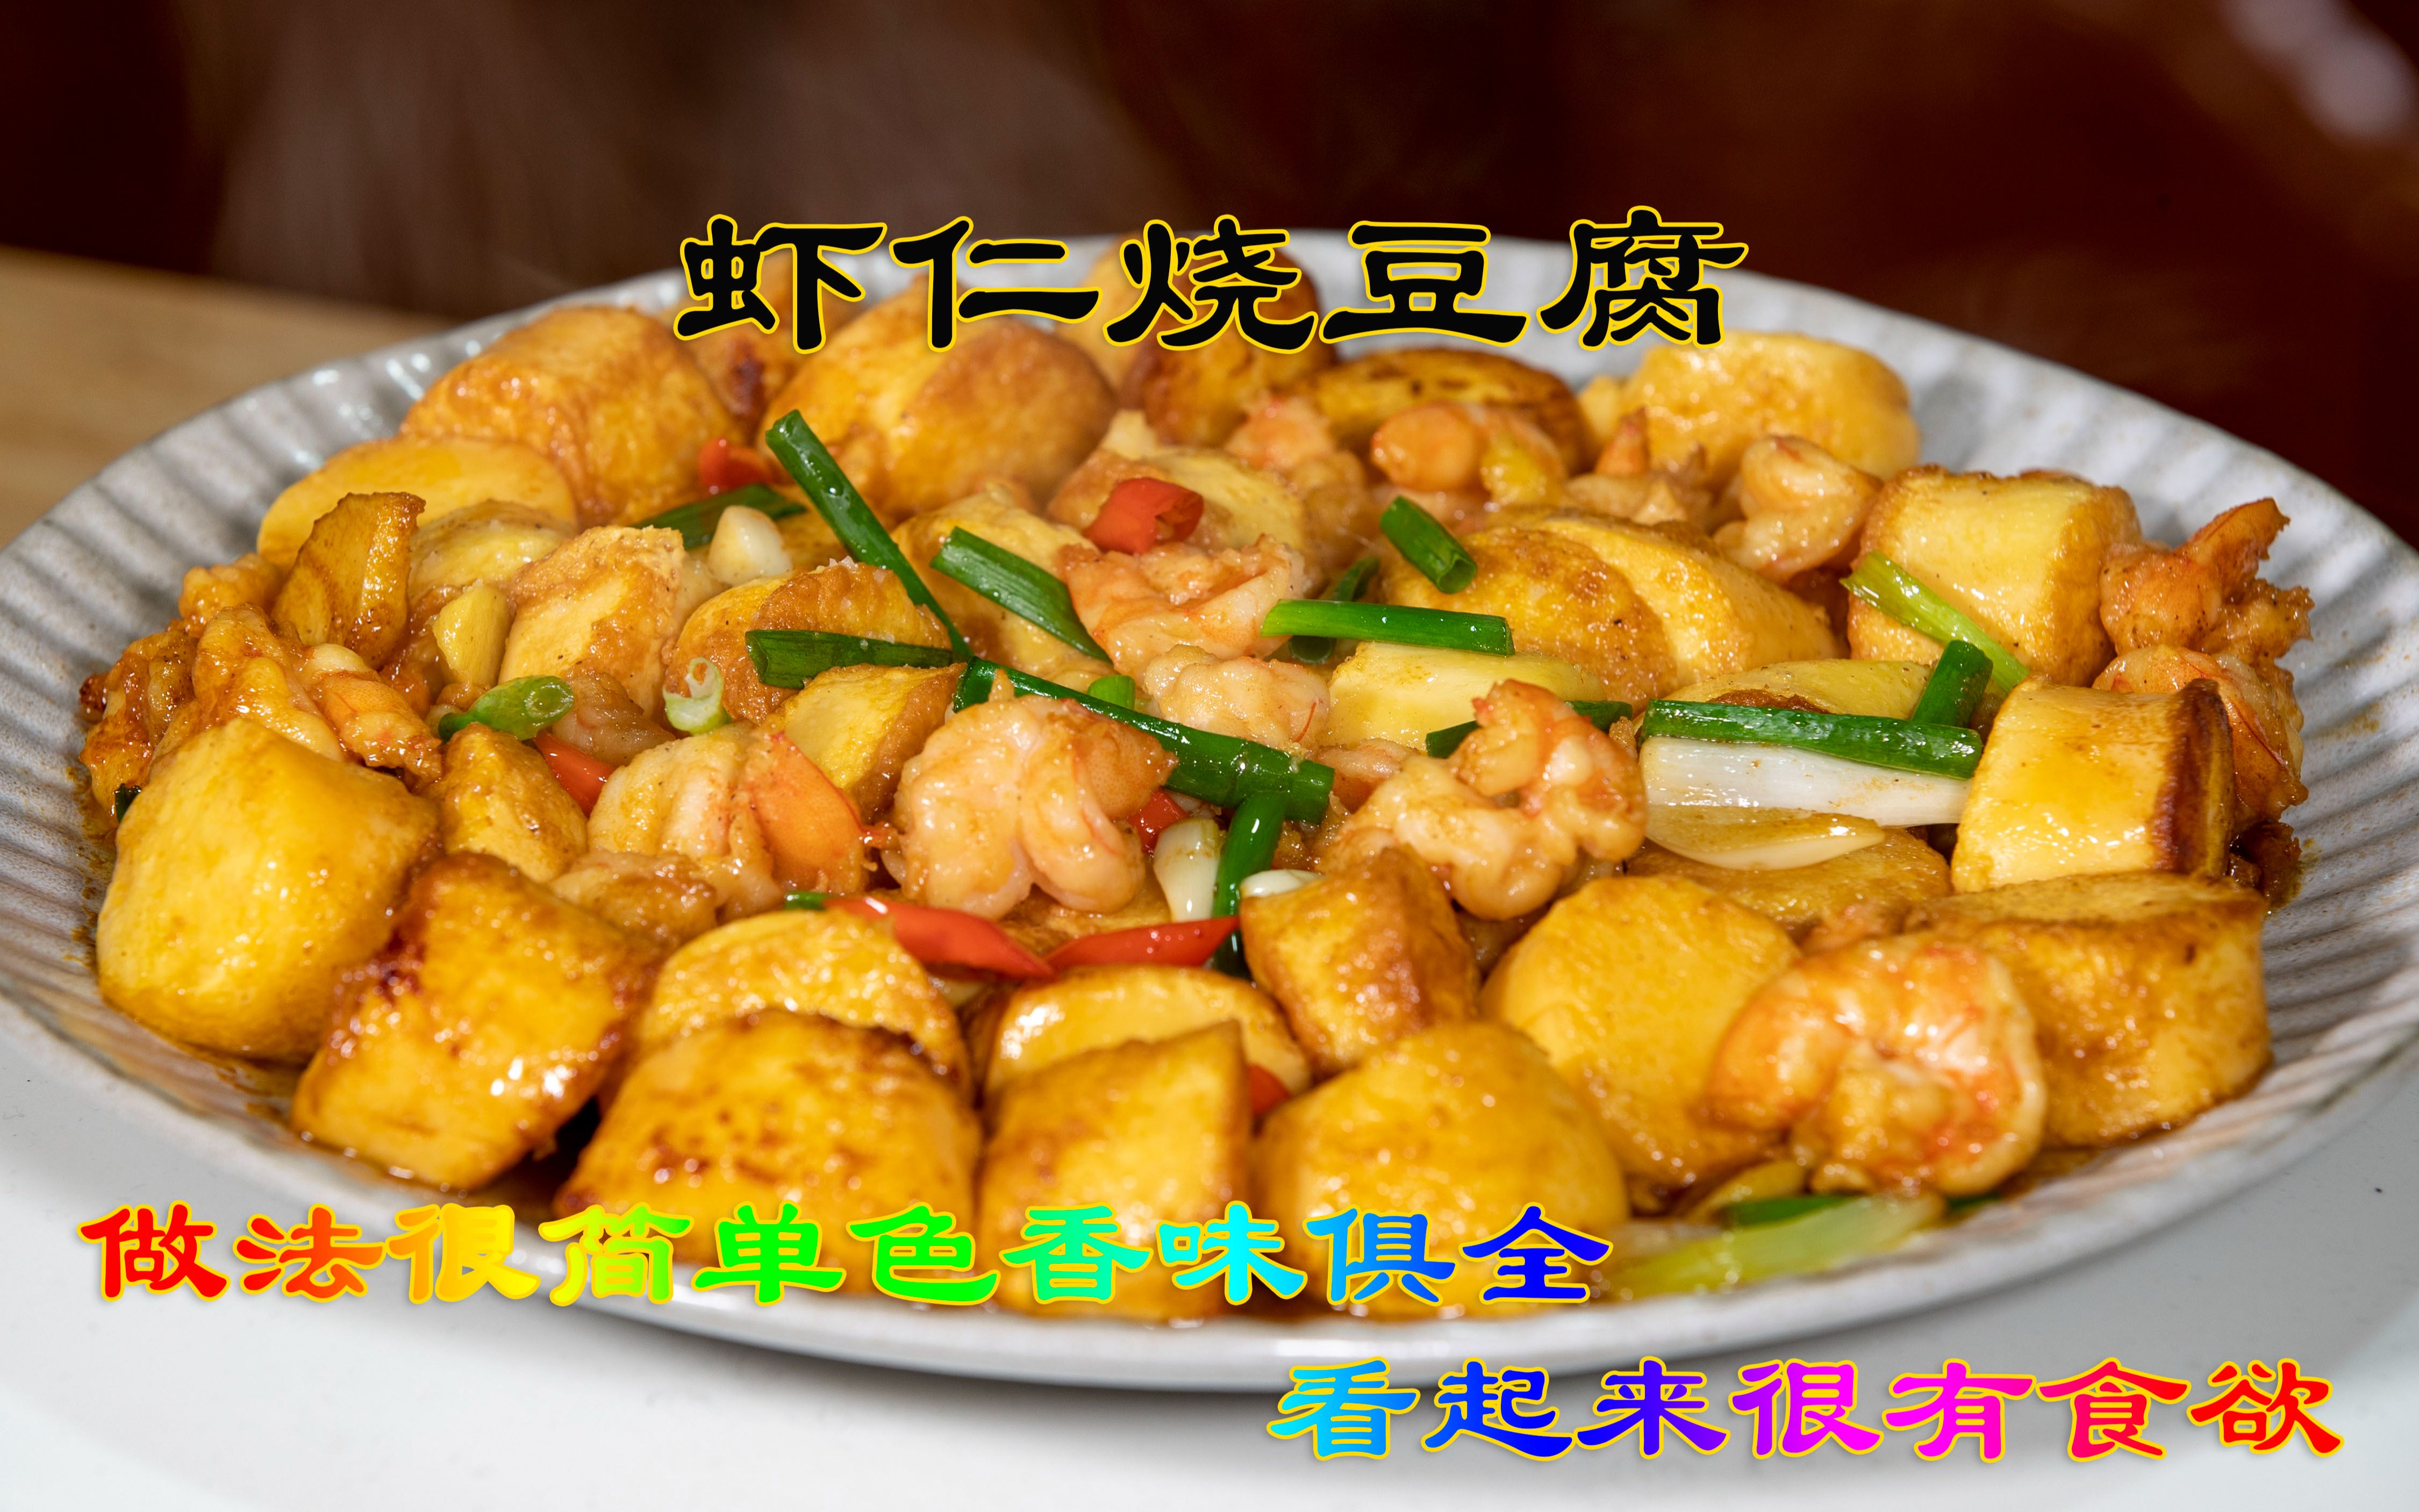 适合孩子们吃的虾仁烧豆腐，做法很简单色香味俱全看起来很有食欲